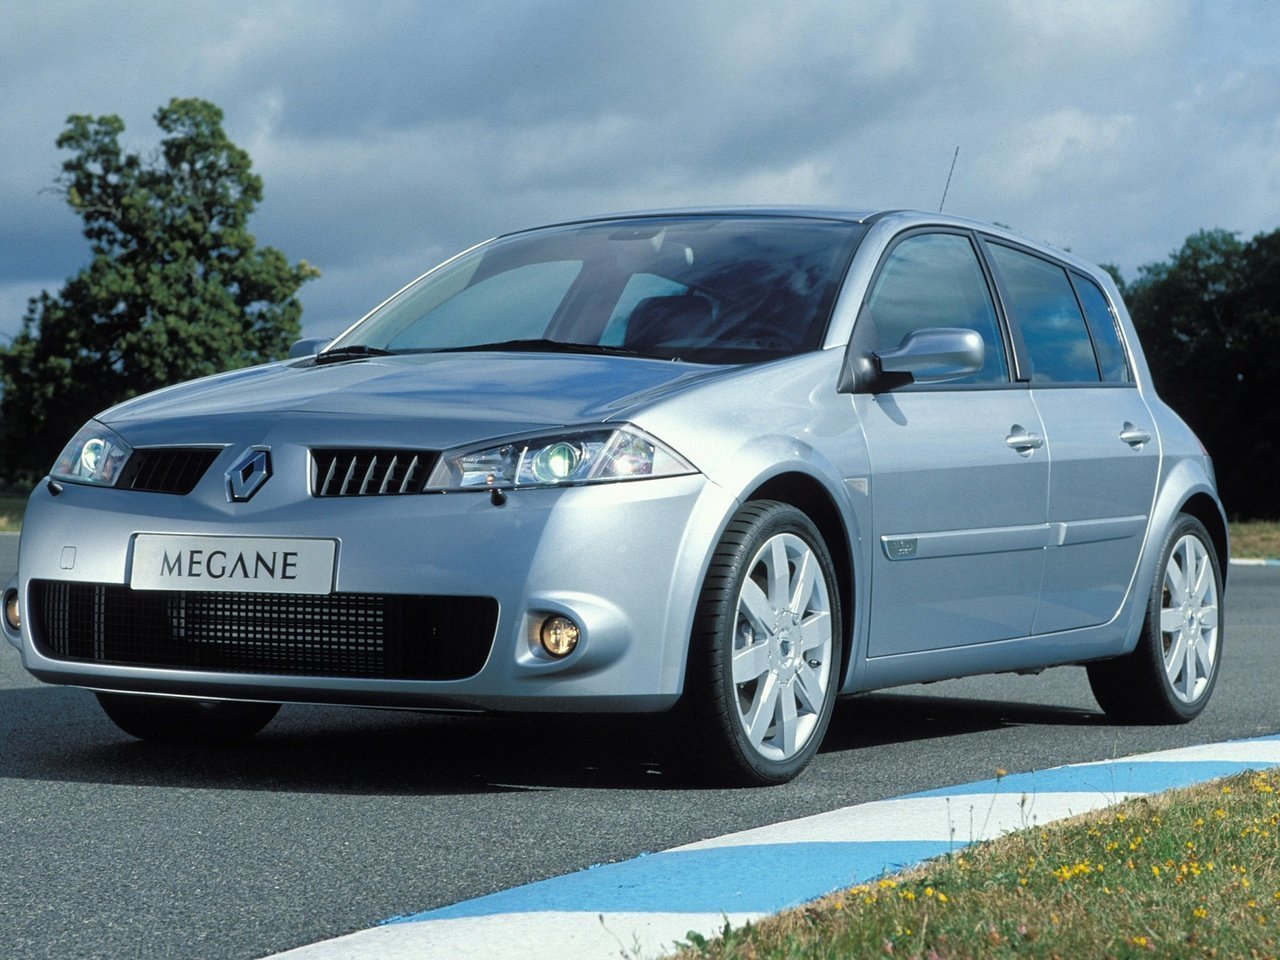 Расход газа одной комплектации хэтчбека пять дверей Renault Megane RS. Разница стоимости заправки газом и бензином. Автономный пробег до и после установки ГБО.